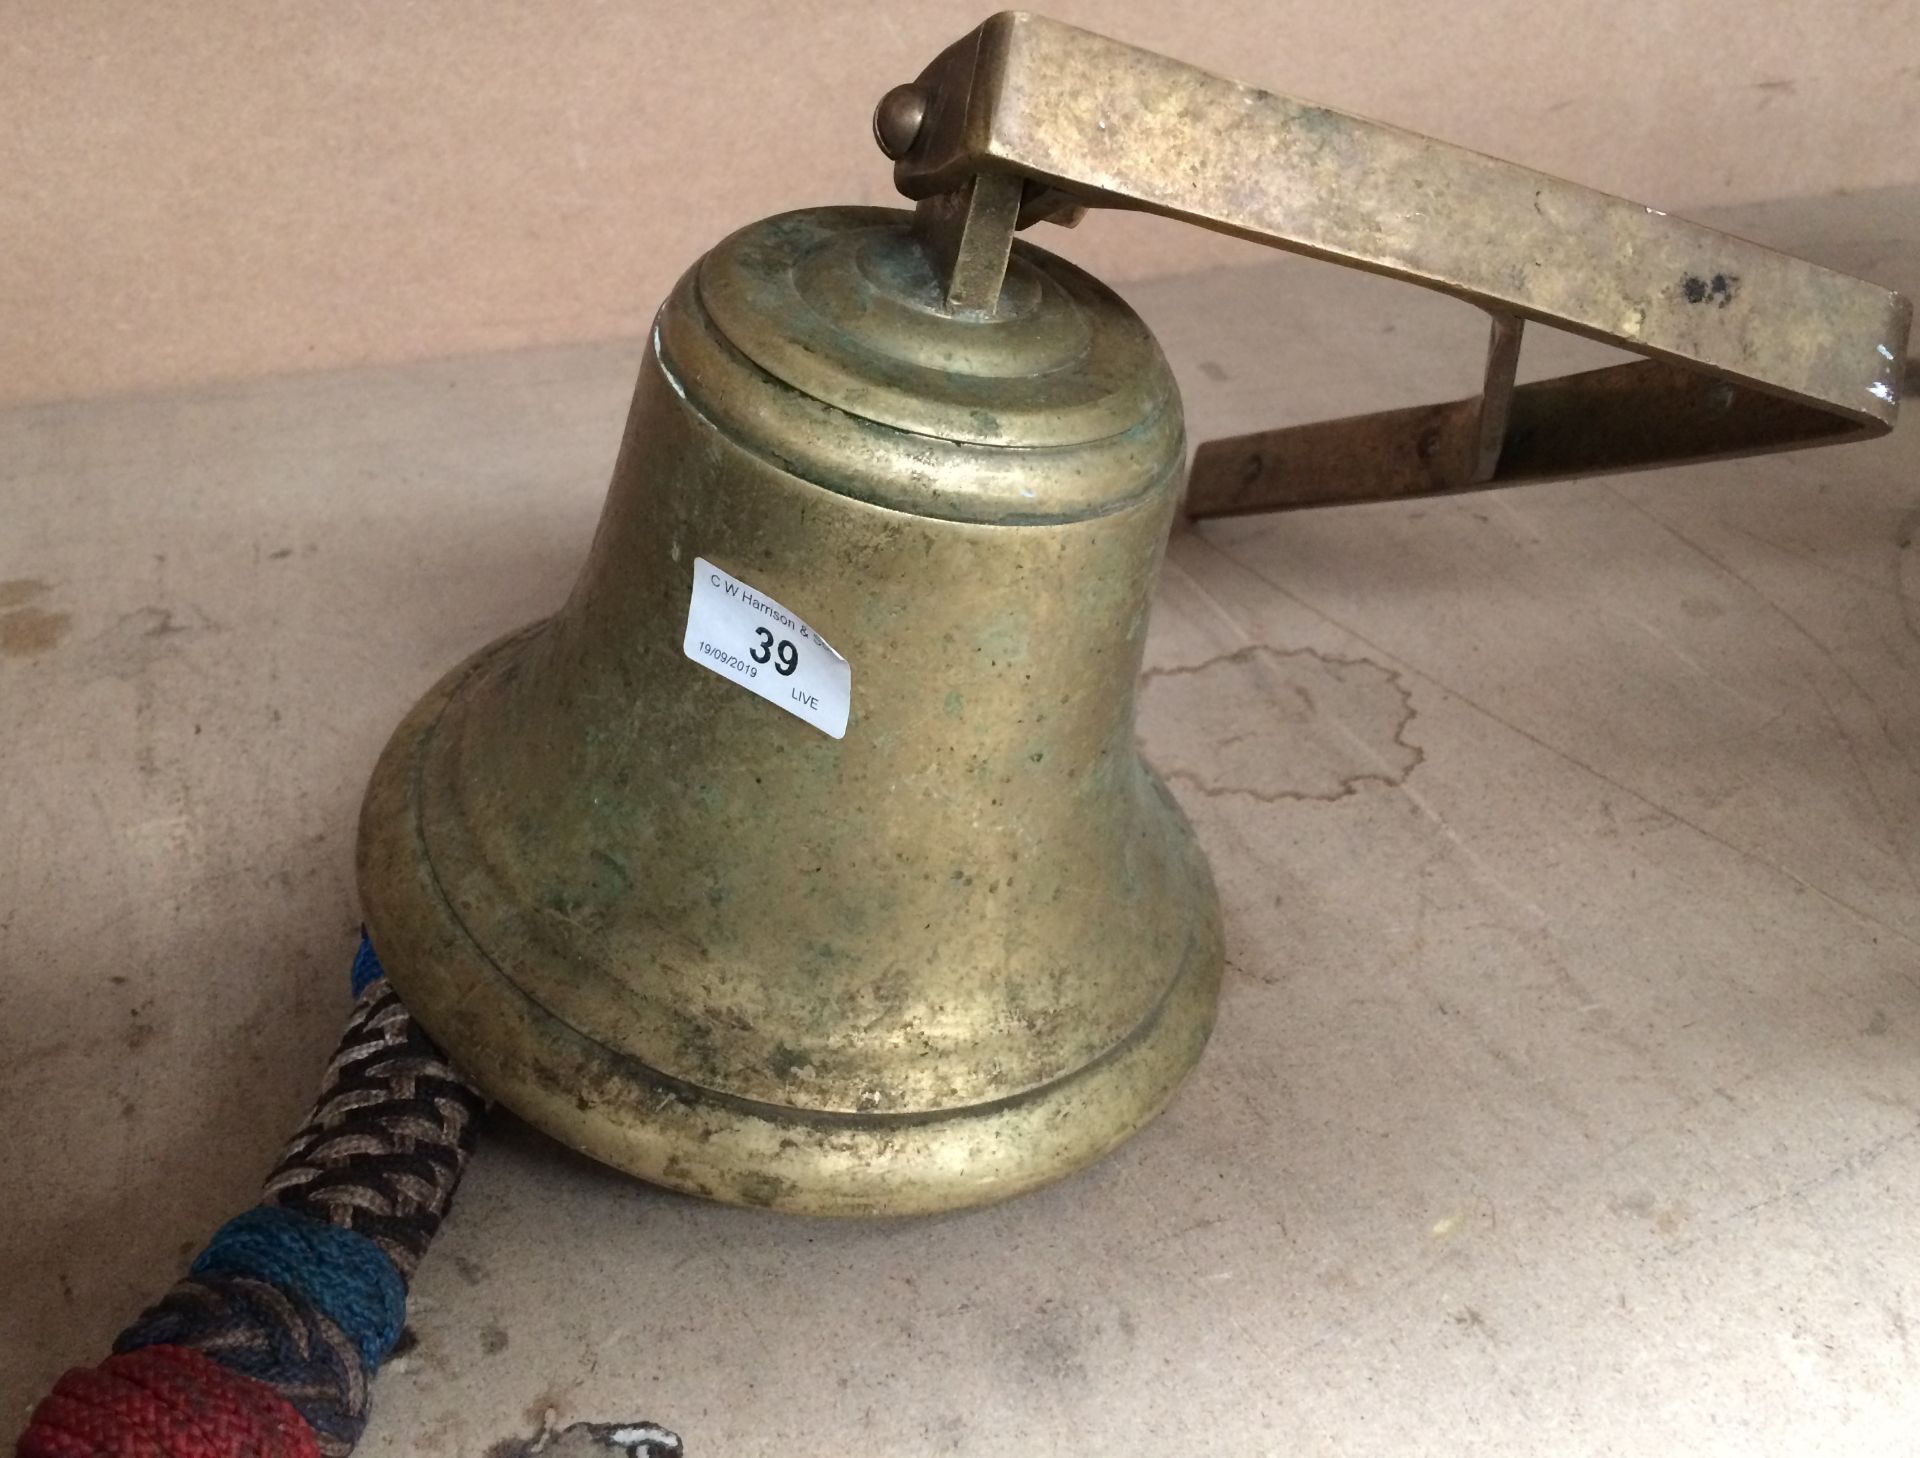 A brass bell - 20cm high,